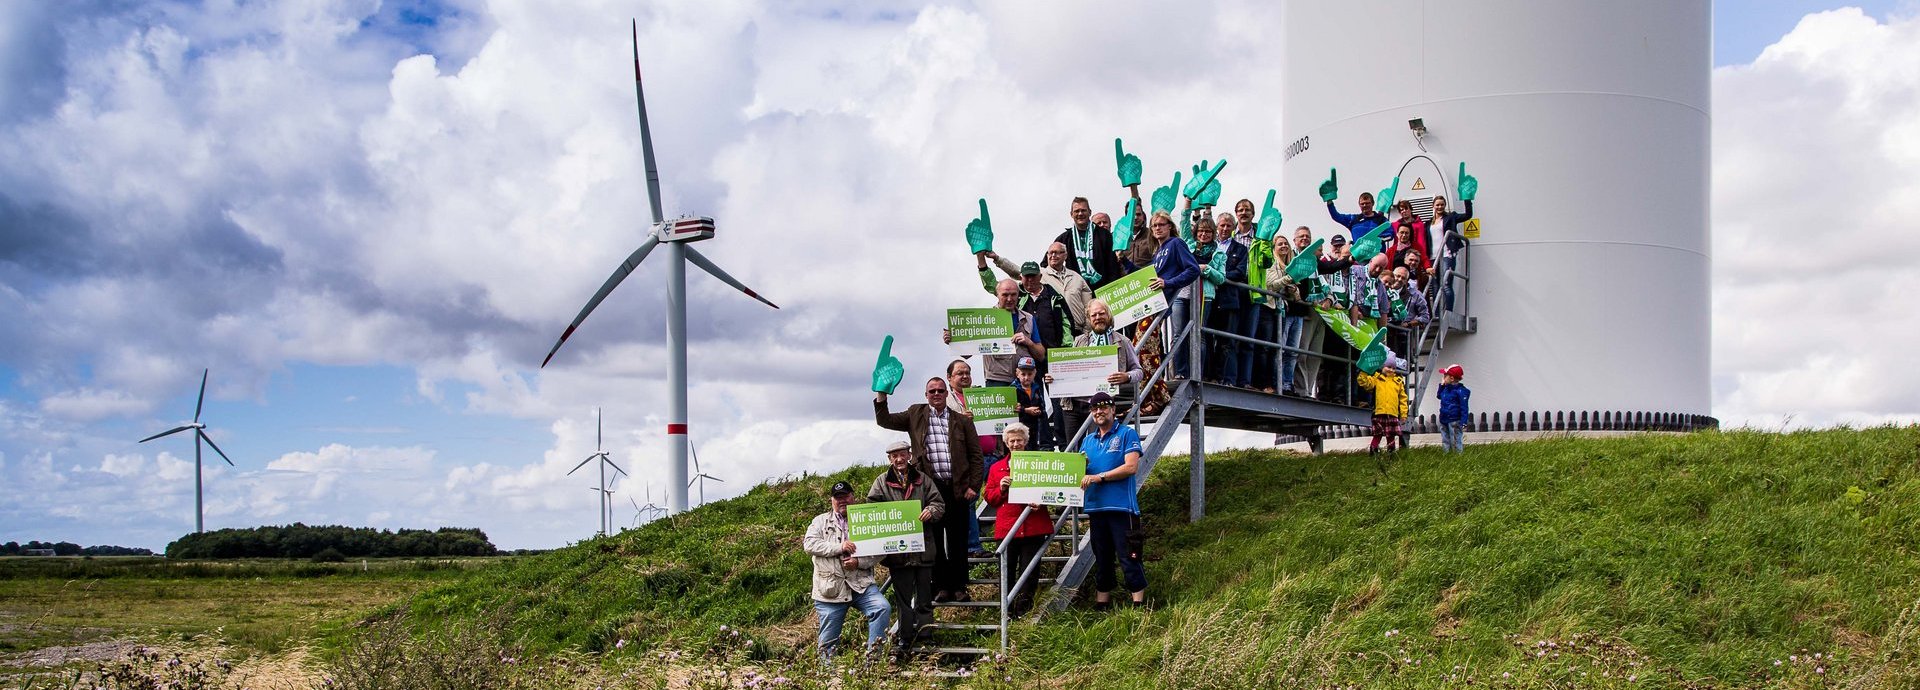 Menschengruppe mit Wir sind die Energiewende Schildern auf den Treppen vor einem Windrad